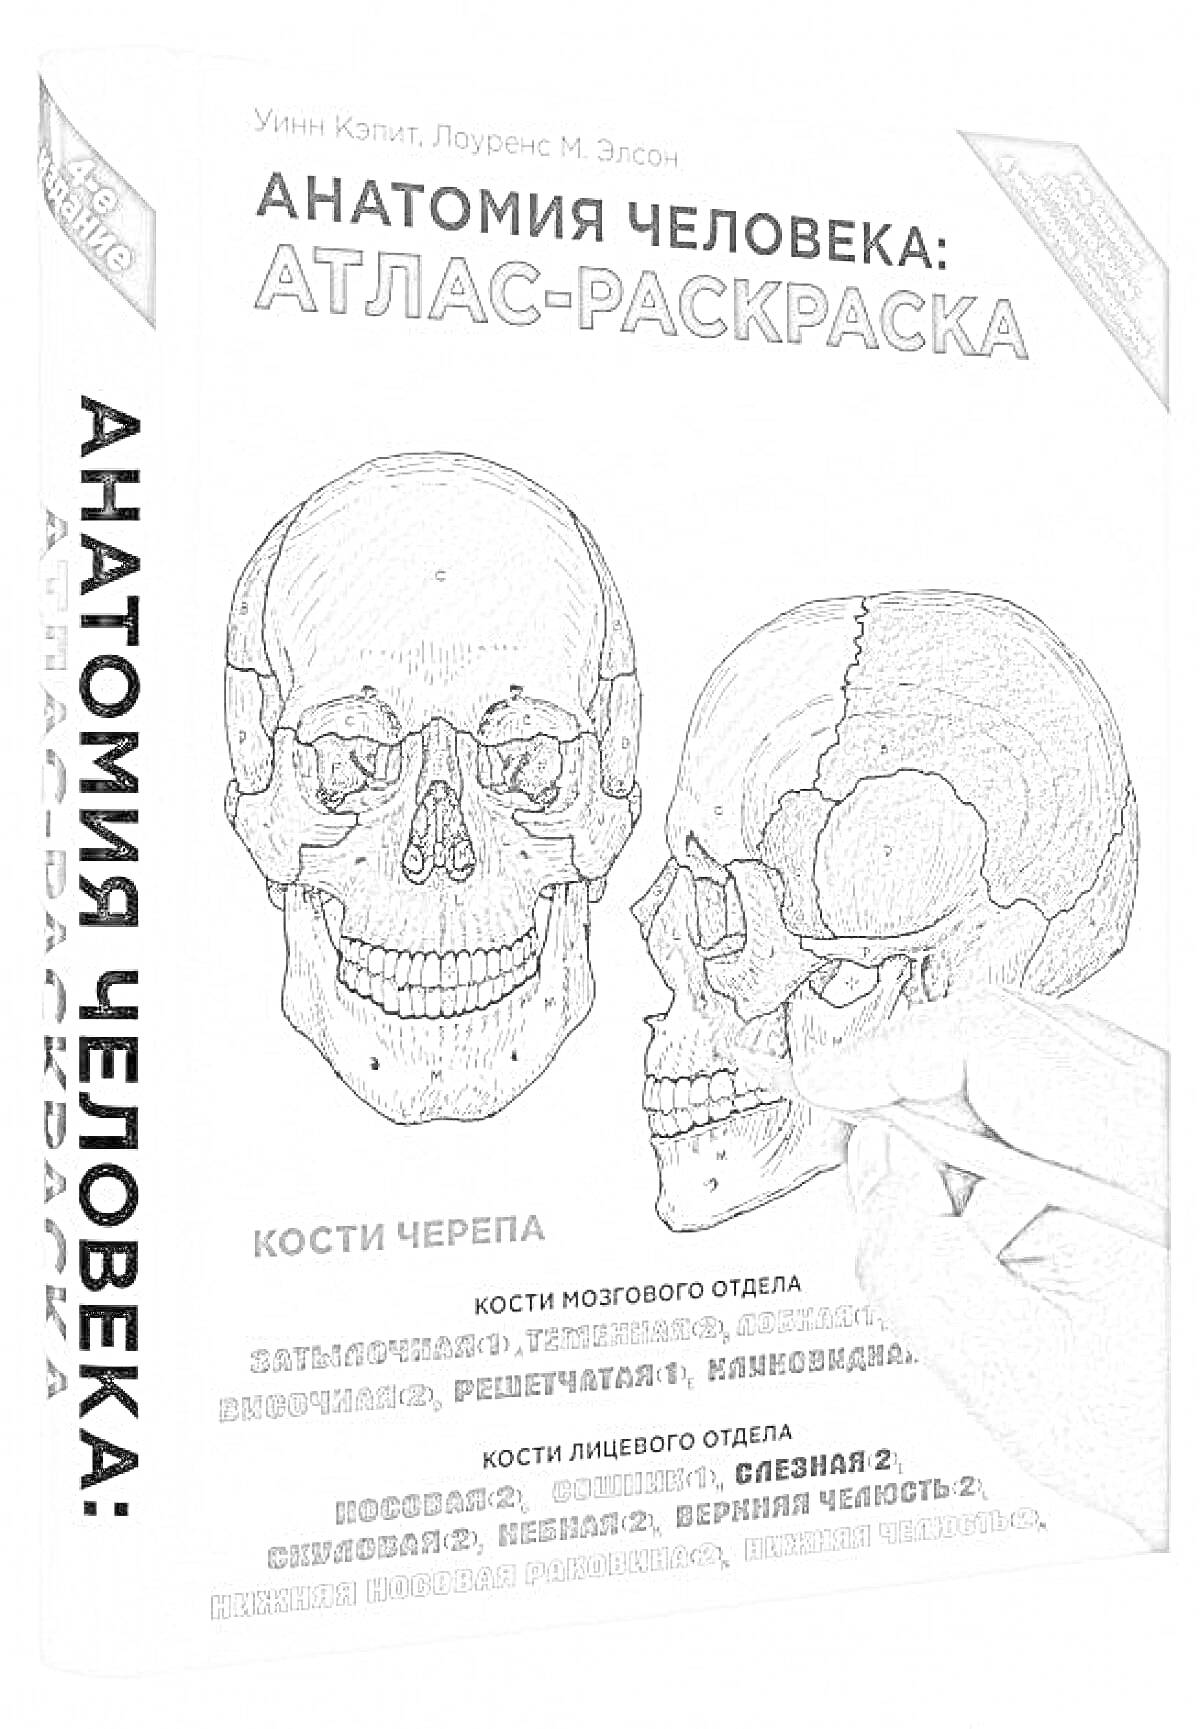 Раскраска Анатомия человека: Атлас-раскраска. Кости черепа: Кости мозгового отдела - затылочная, теменная, лобная, решетчатая, клиновидная; Кости лицевого отдела - носовая, слезная, верхняя челюсть 2, скуловая, небная, нижняя челюсть